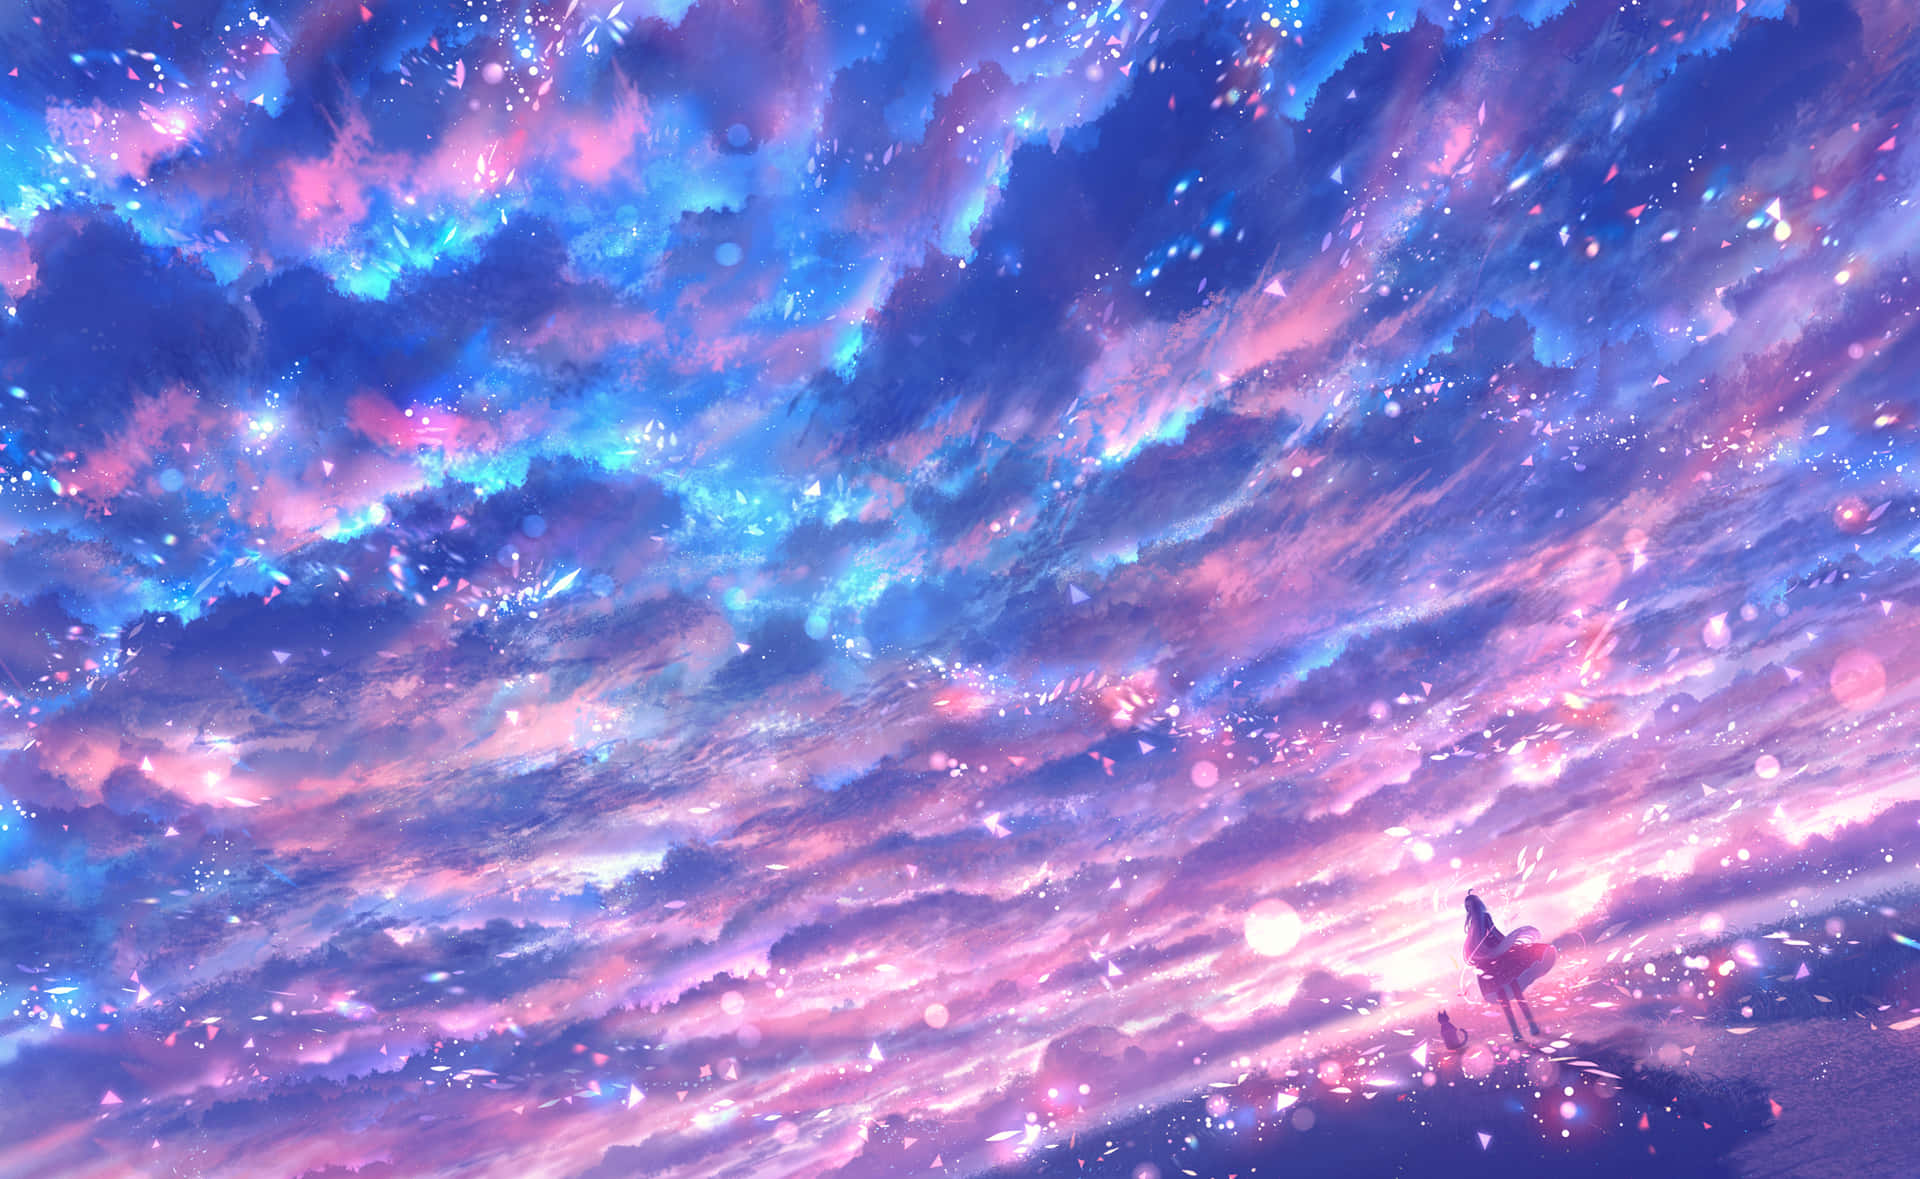 Lassensie Sich Inspirieren, Während Sie Auf Diesen Anime Sky Vista Blicken.